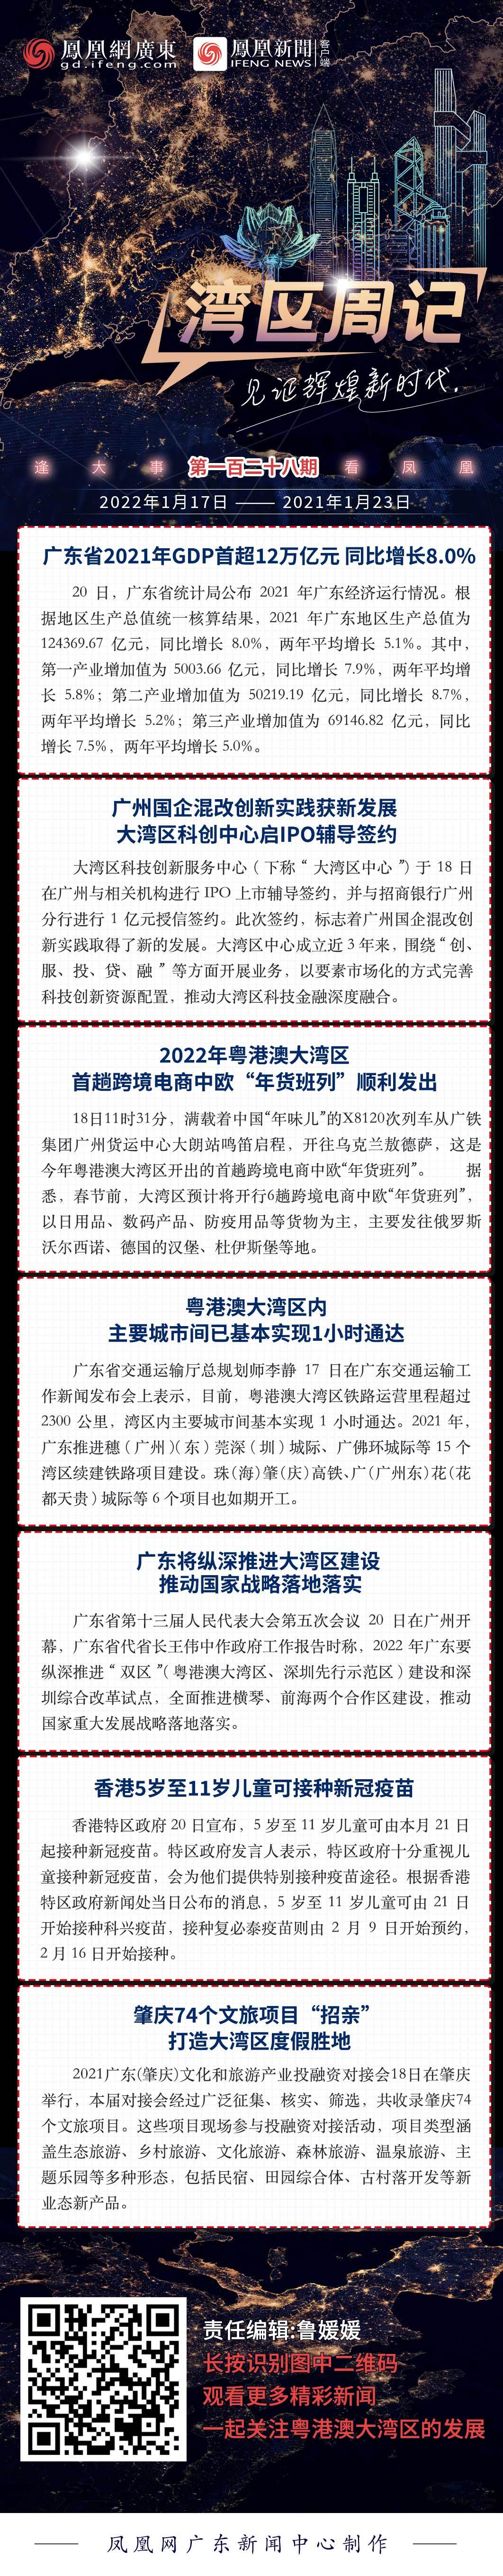 湾区周记No.128丨广东省2021年GDP首超12万亿元 同比增长8.0%